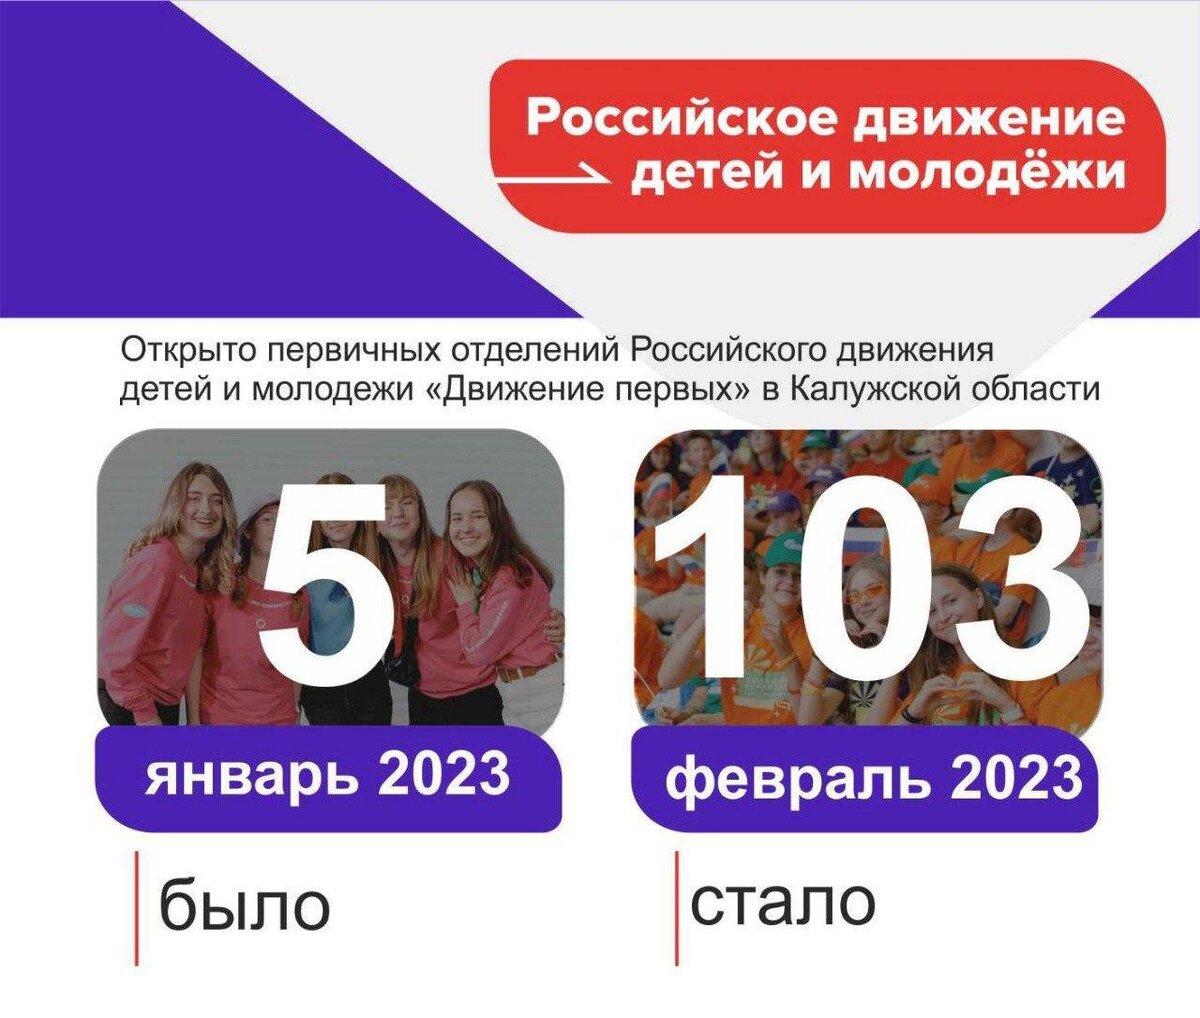 Российское движение молодежи регистрации